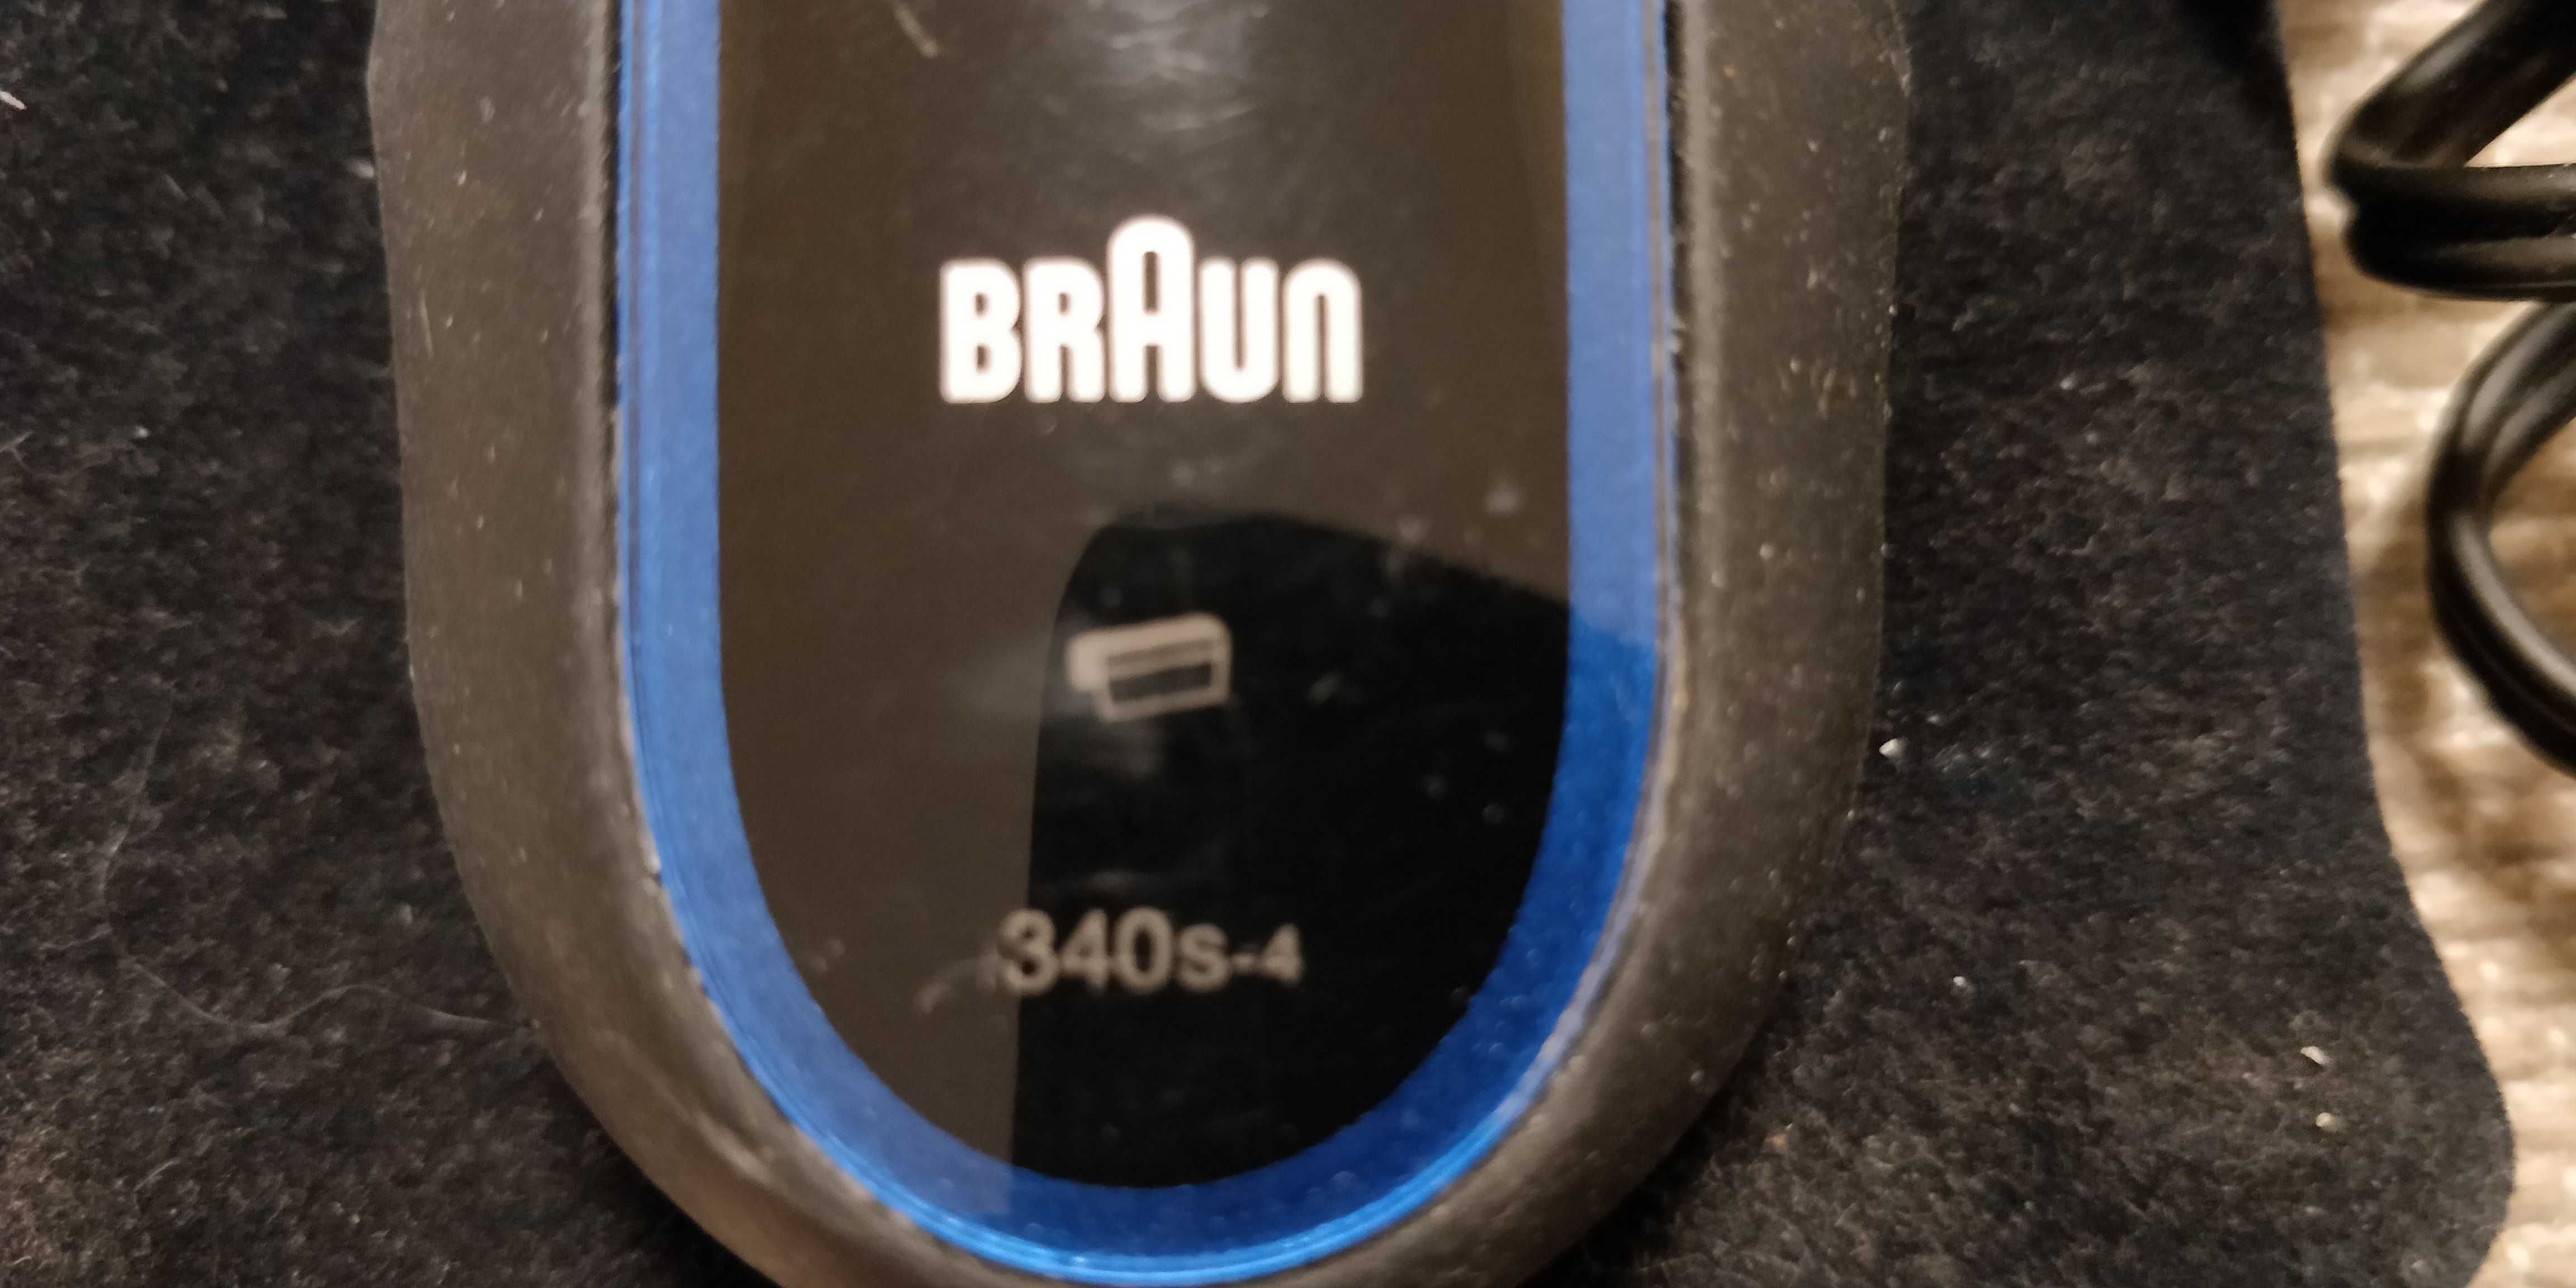 Бритва Braun 340s-4